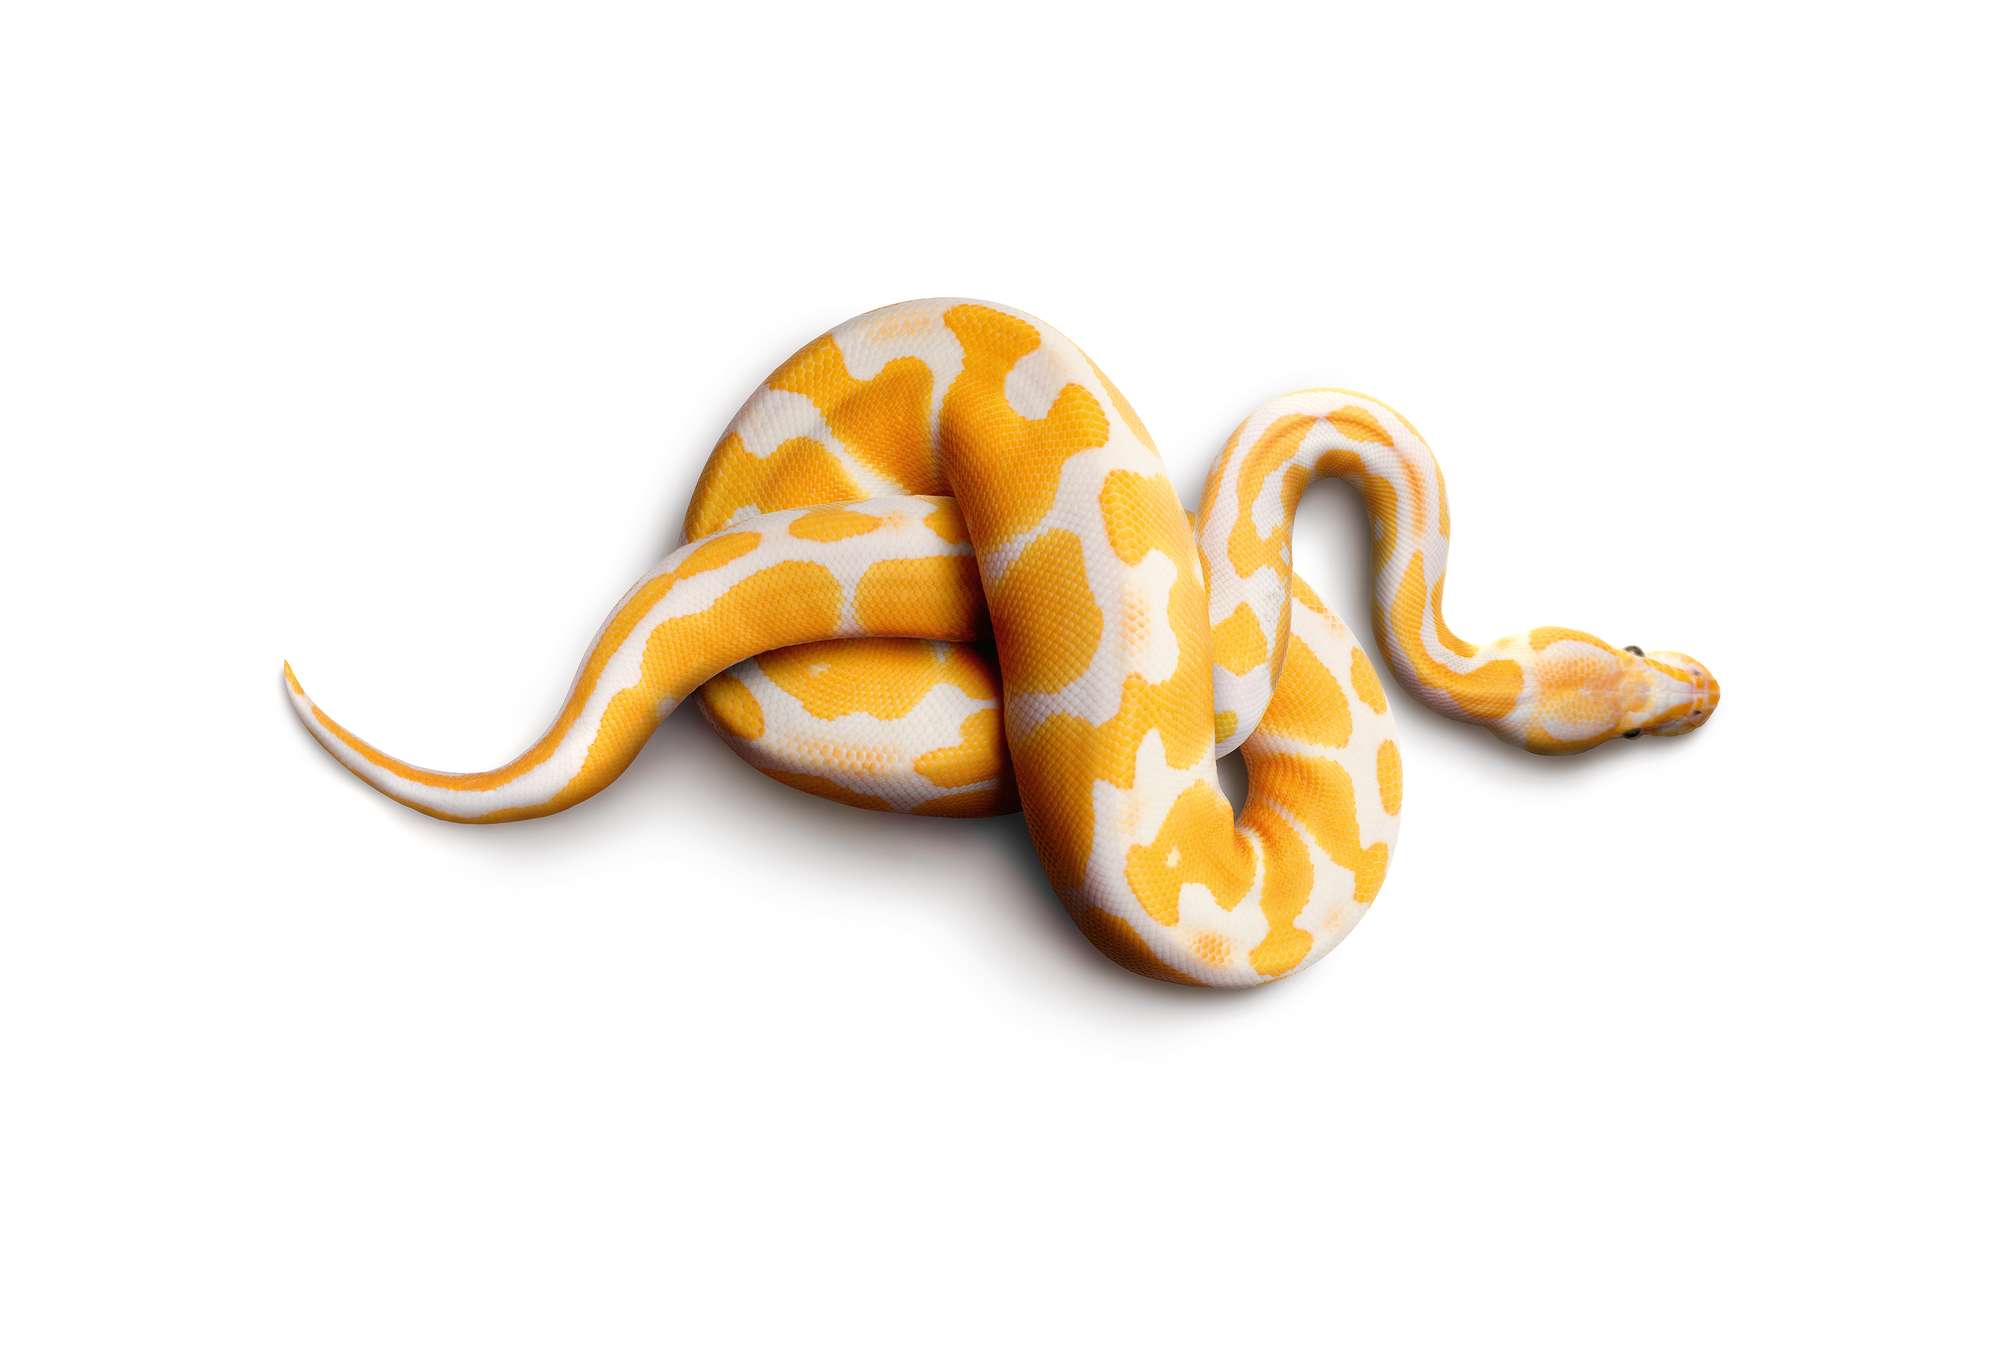             Pitone albino - foto sfondo serpente
        